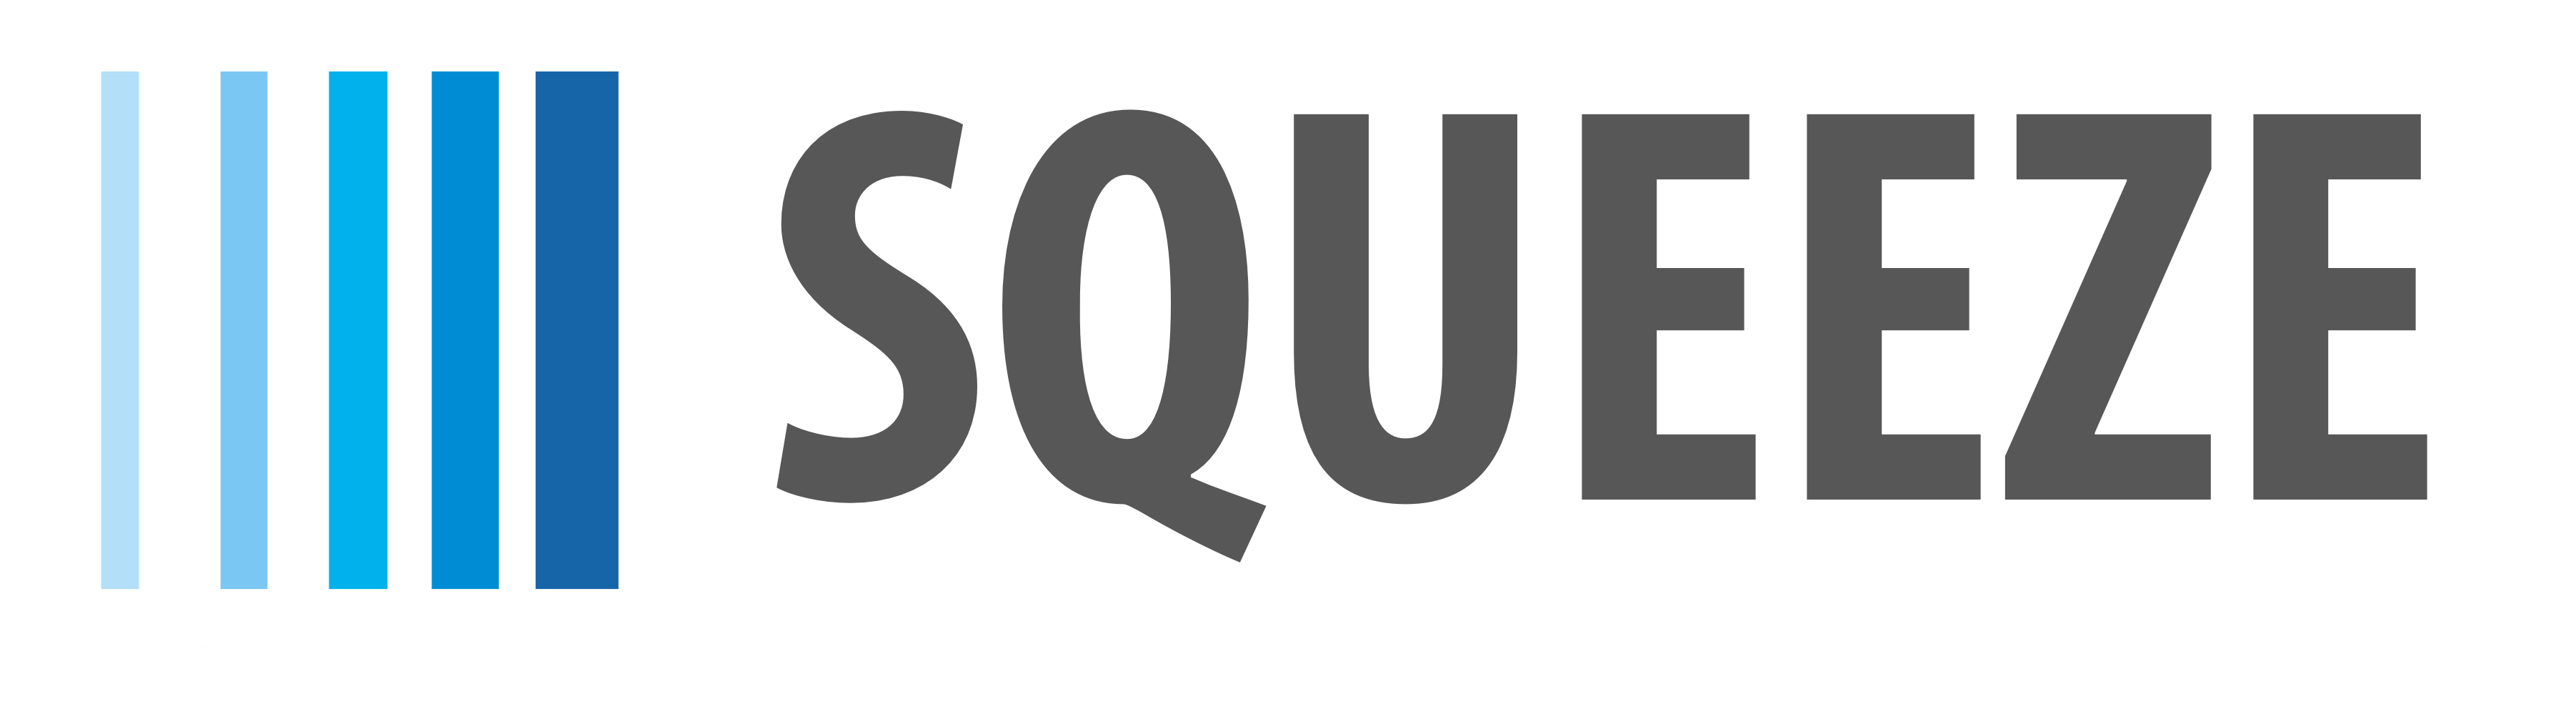 株式会社SQUEEZEのロゴ